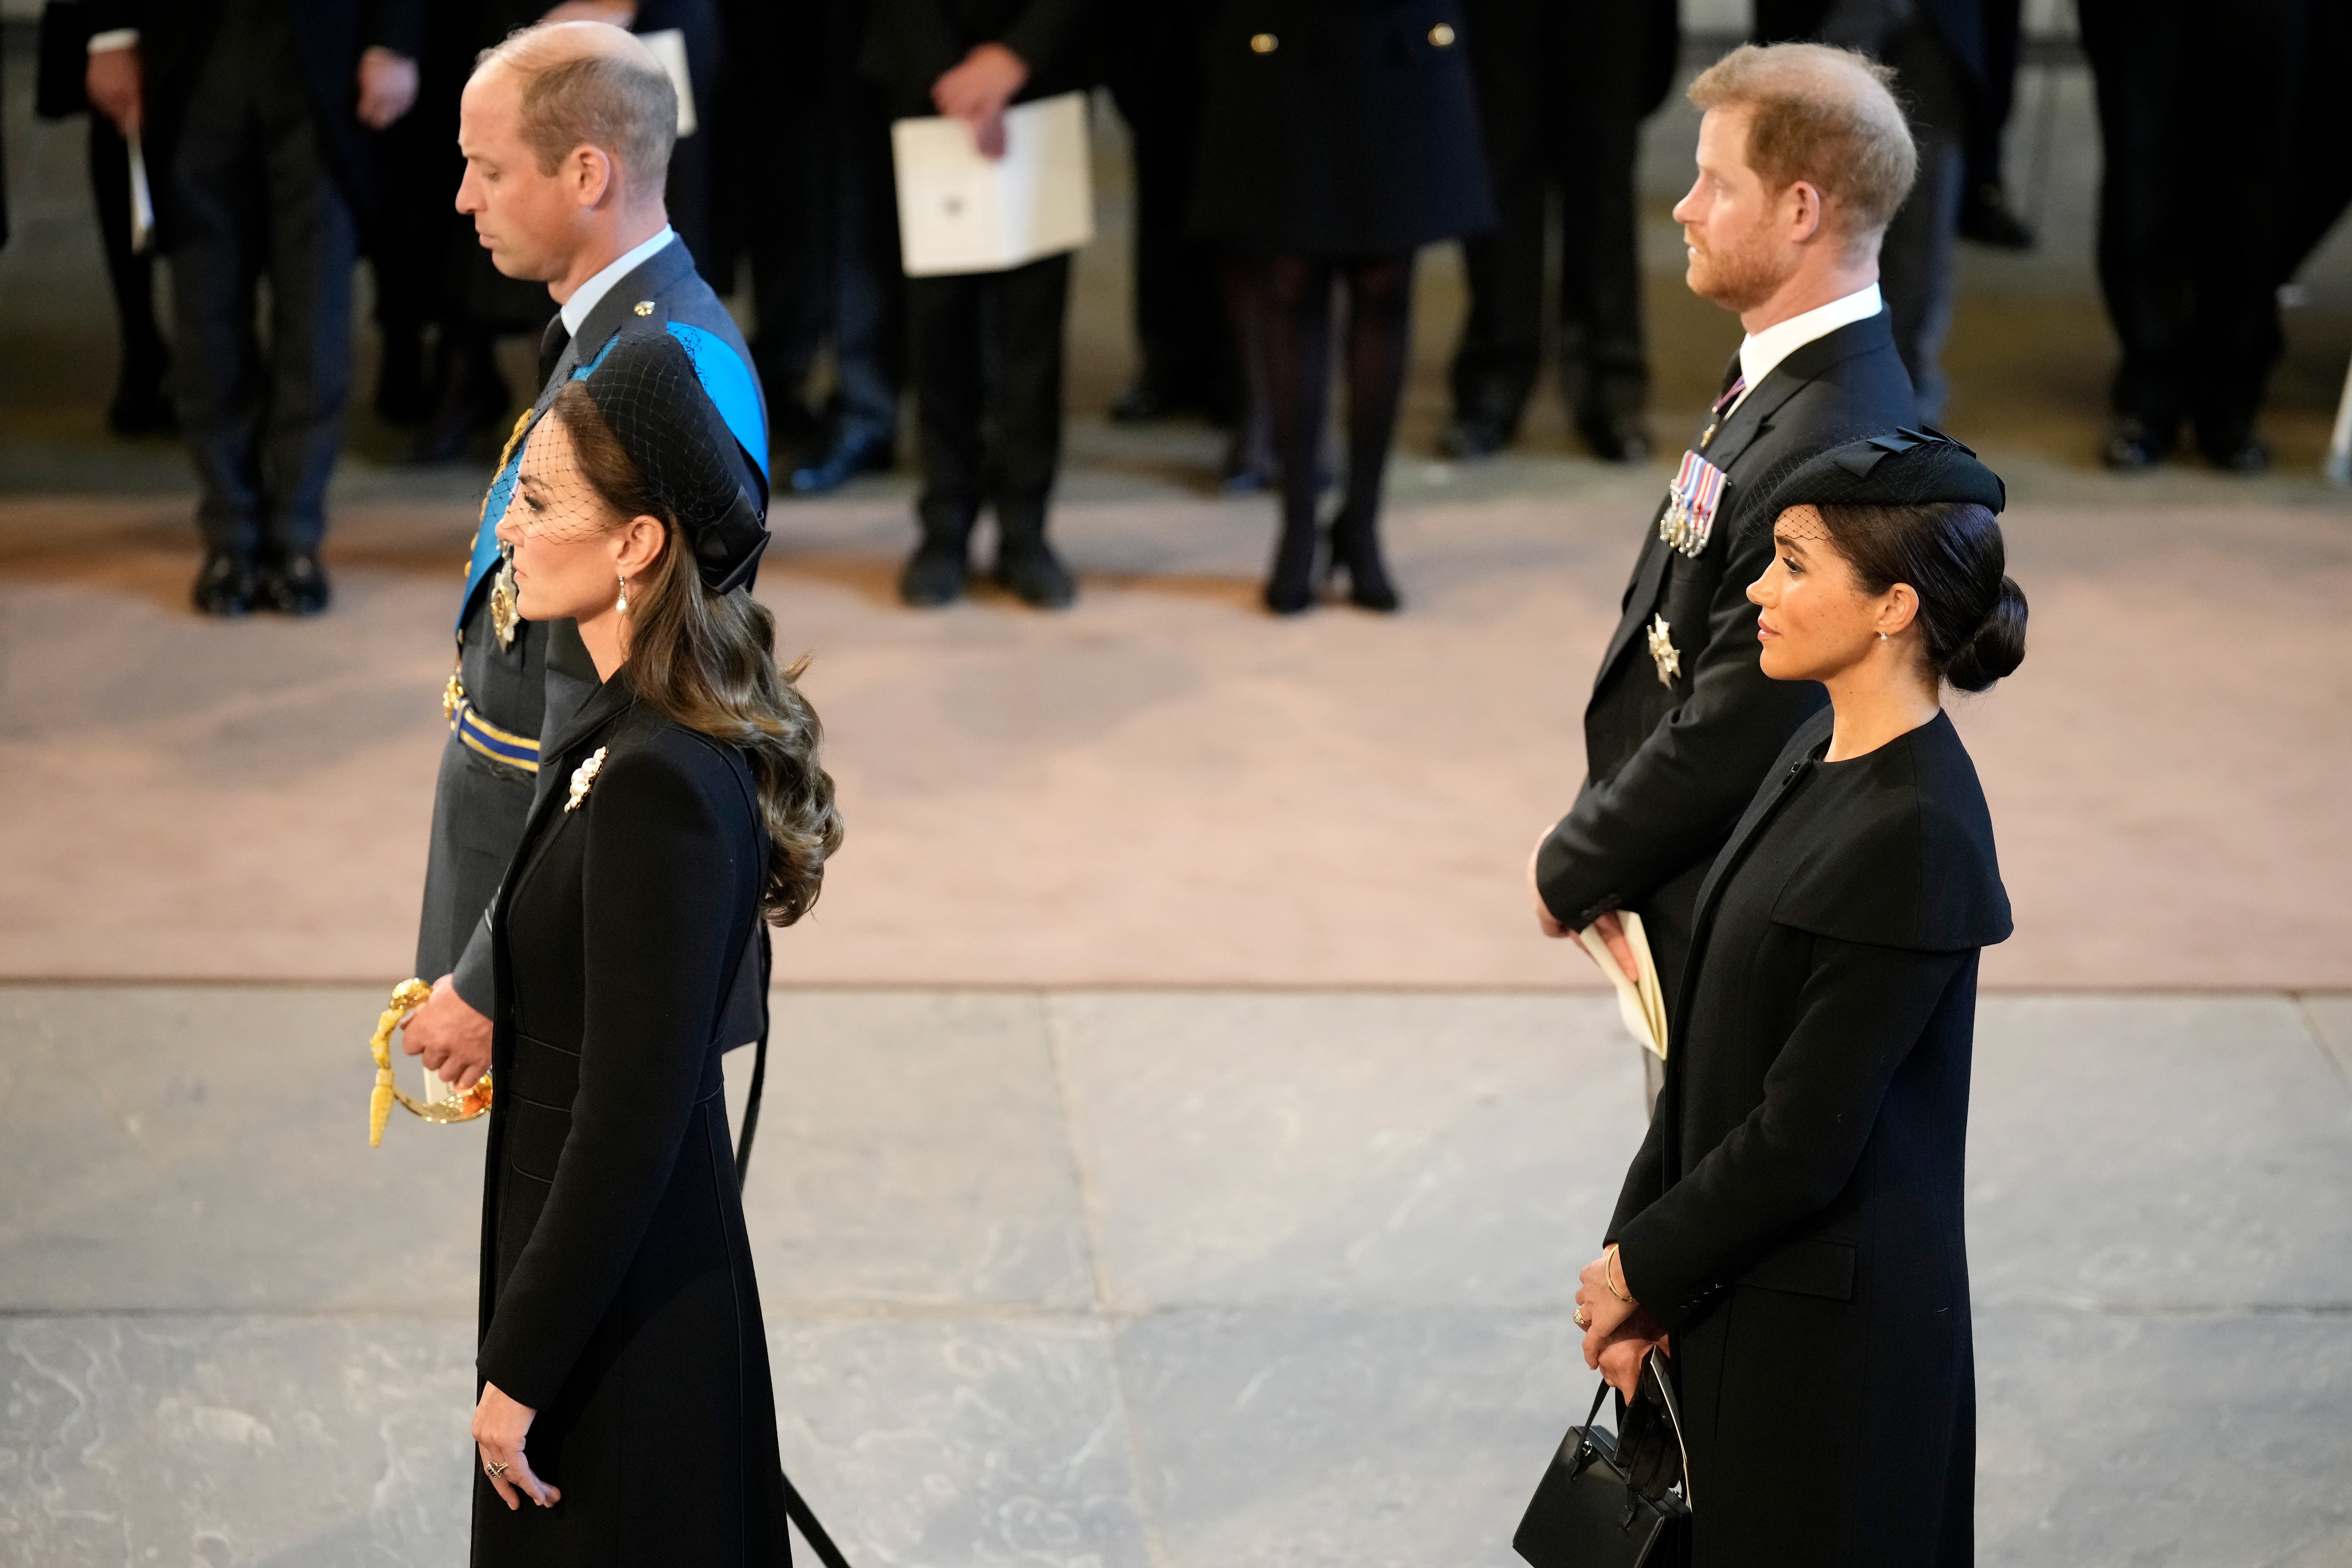 Catherine, princesa de Gales, el príncipe William, príncipe de Gales, Meghan, duquesa de Sussex y el príncipe Harry, duque de Sussex, en el palacio de Westminster después de la procesión de estado en el funeral de la reina Elizabeth II, el 14 de septiembre. 2022 en Londres, Inglaterra. | Foto: Getty Images